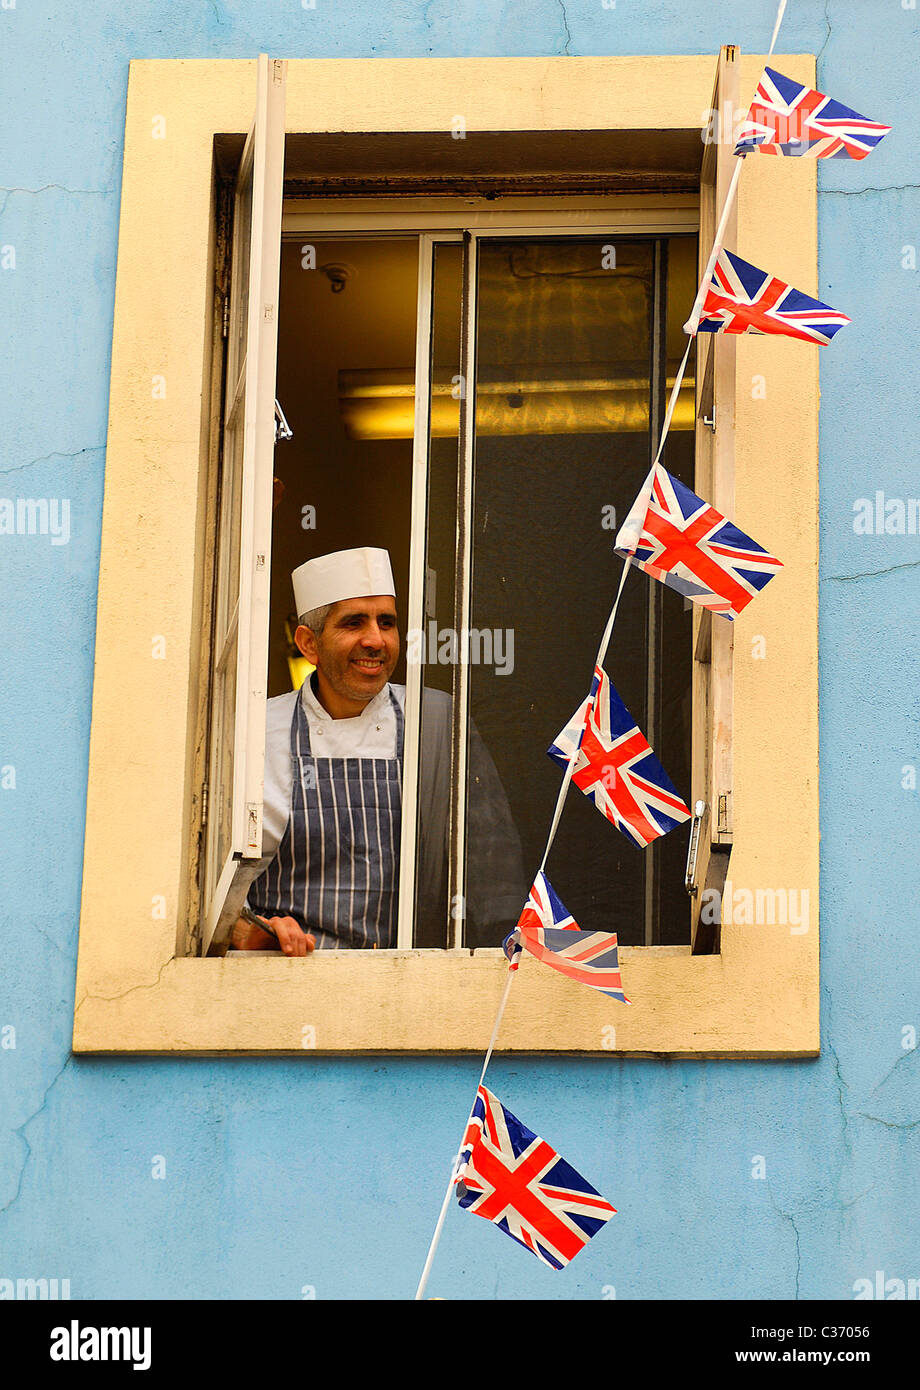 Un boulanger s'arrête pour une pause dans une fenêtre de la Maison Bertaux à Soho Street, Londres, 29-04-2011 Banque D'Images